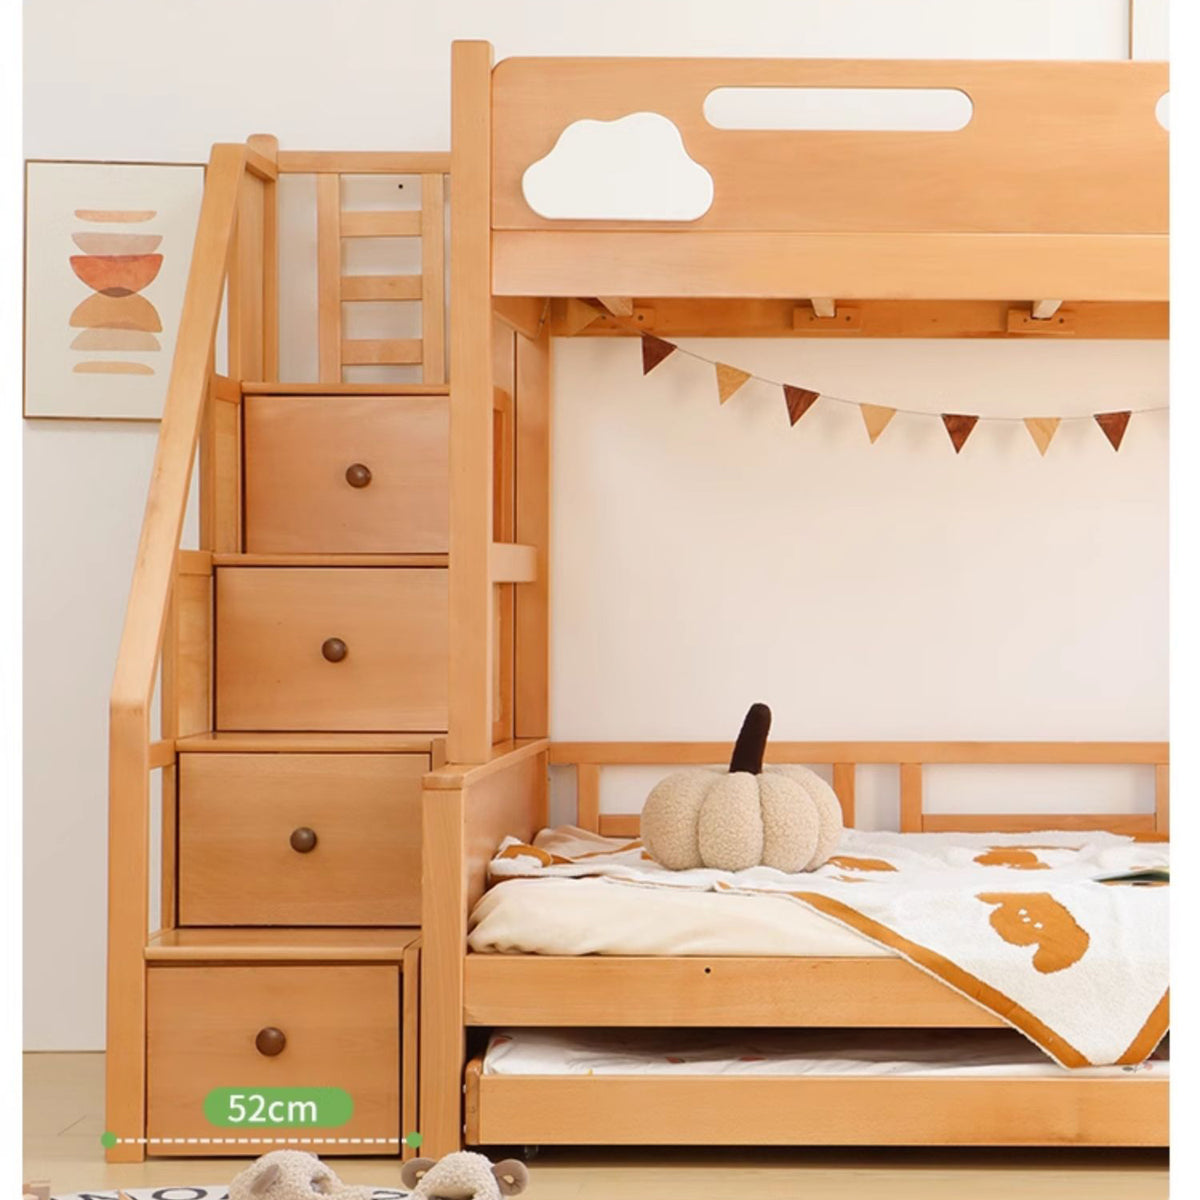 Premium Wooden Bed Frame: Beech, Cedar, Pine & Rubber Wood Options fslmz-1088